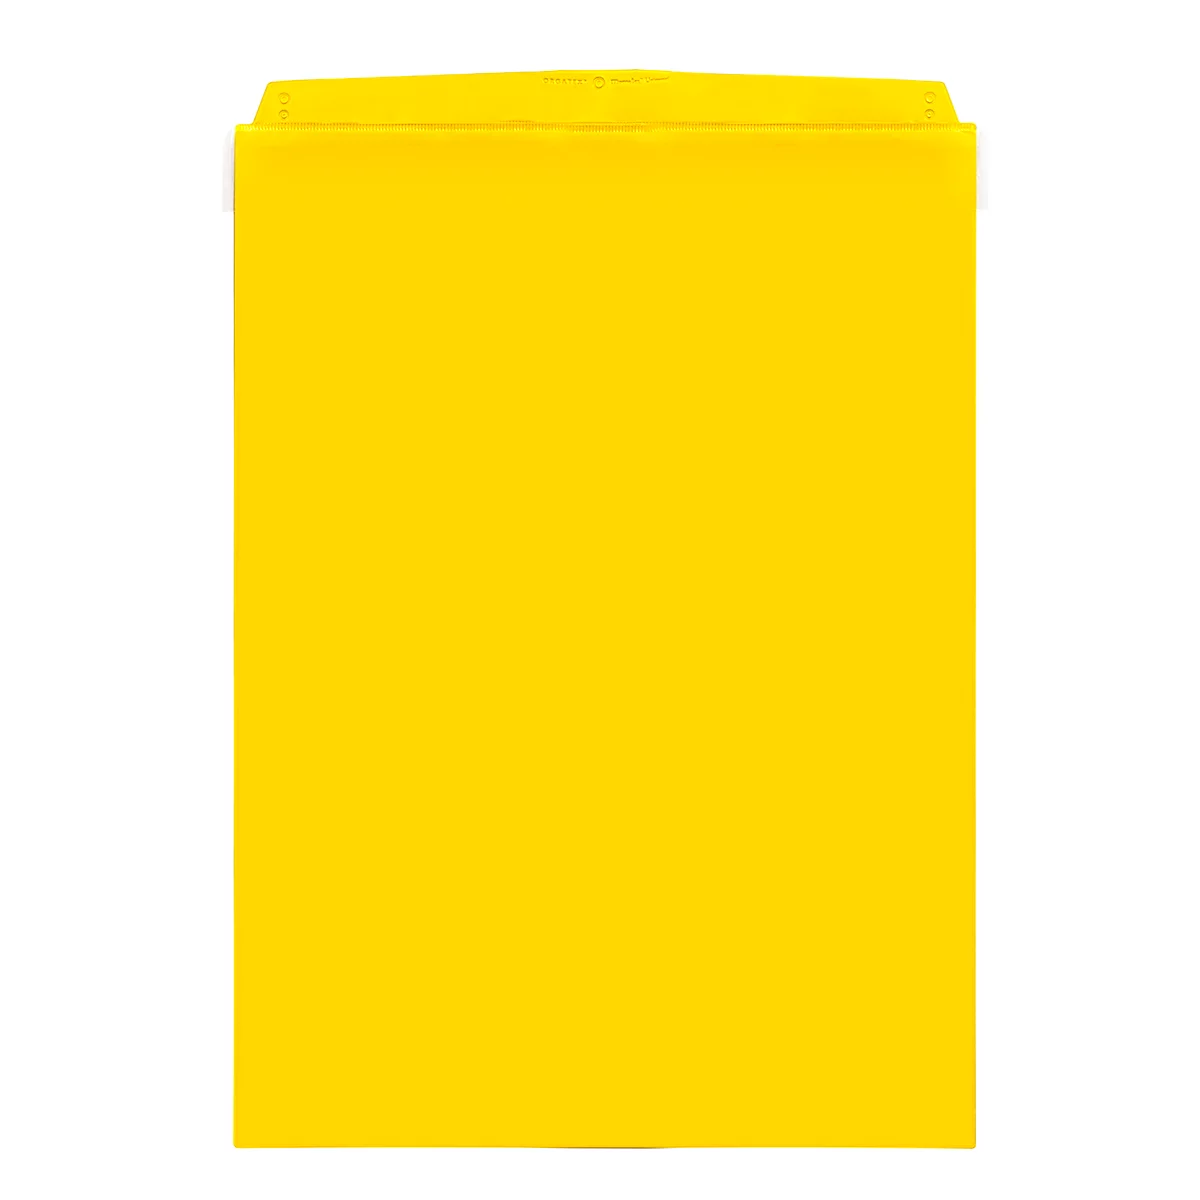 Fundas transparentes Orgatex, c. puerta, A4 vertical, amarillo, 50 uds.